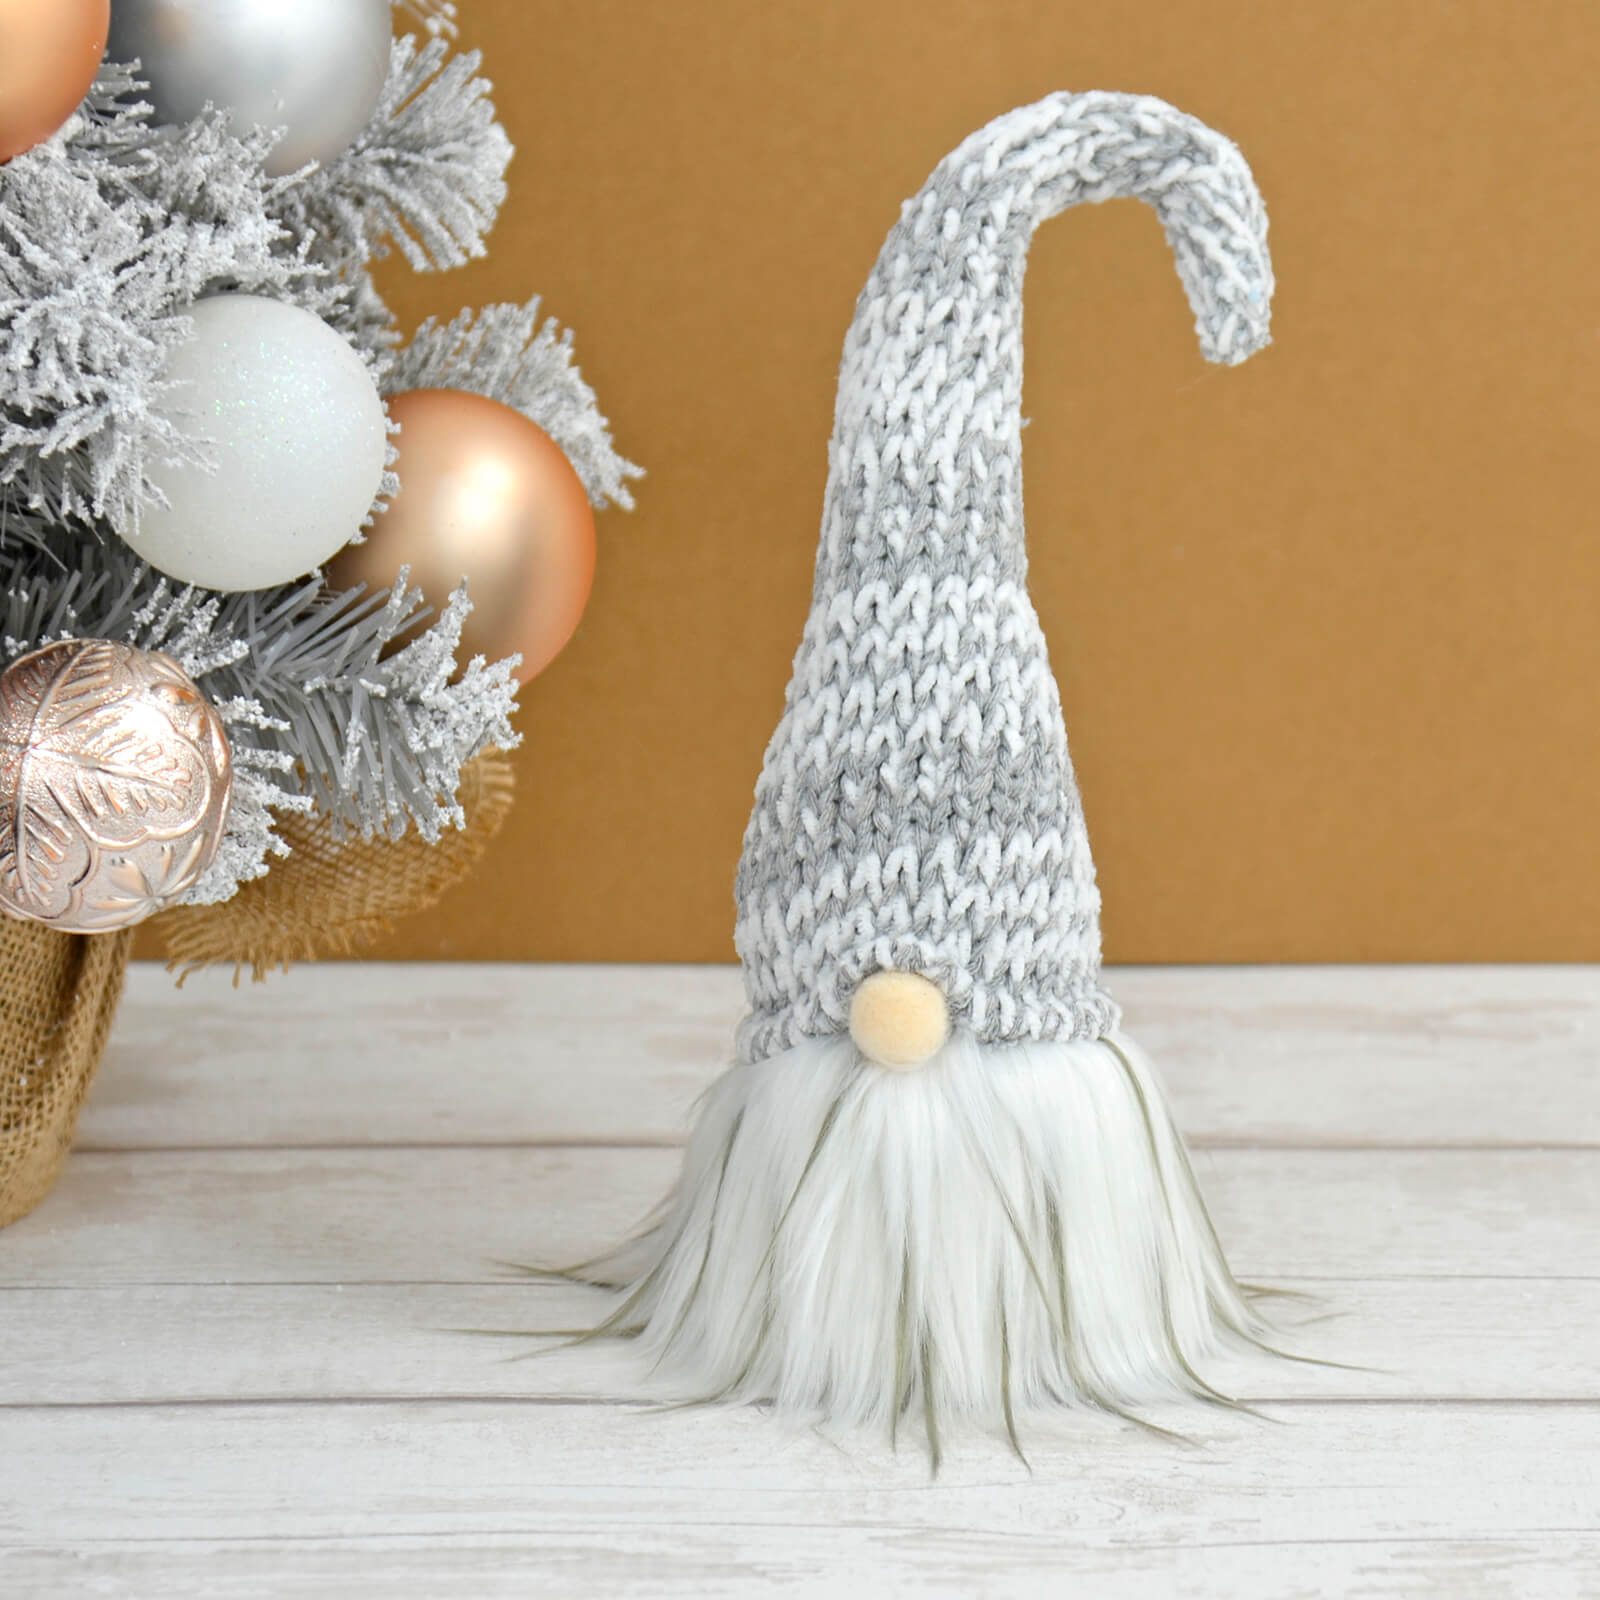 Mr Crimbo Fabric Gonk Grey Tall Hat Christmas Gnome Decoration 30cm - MrCrimbo.co.uk -XS7233 - Light Grey